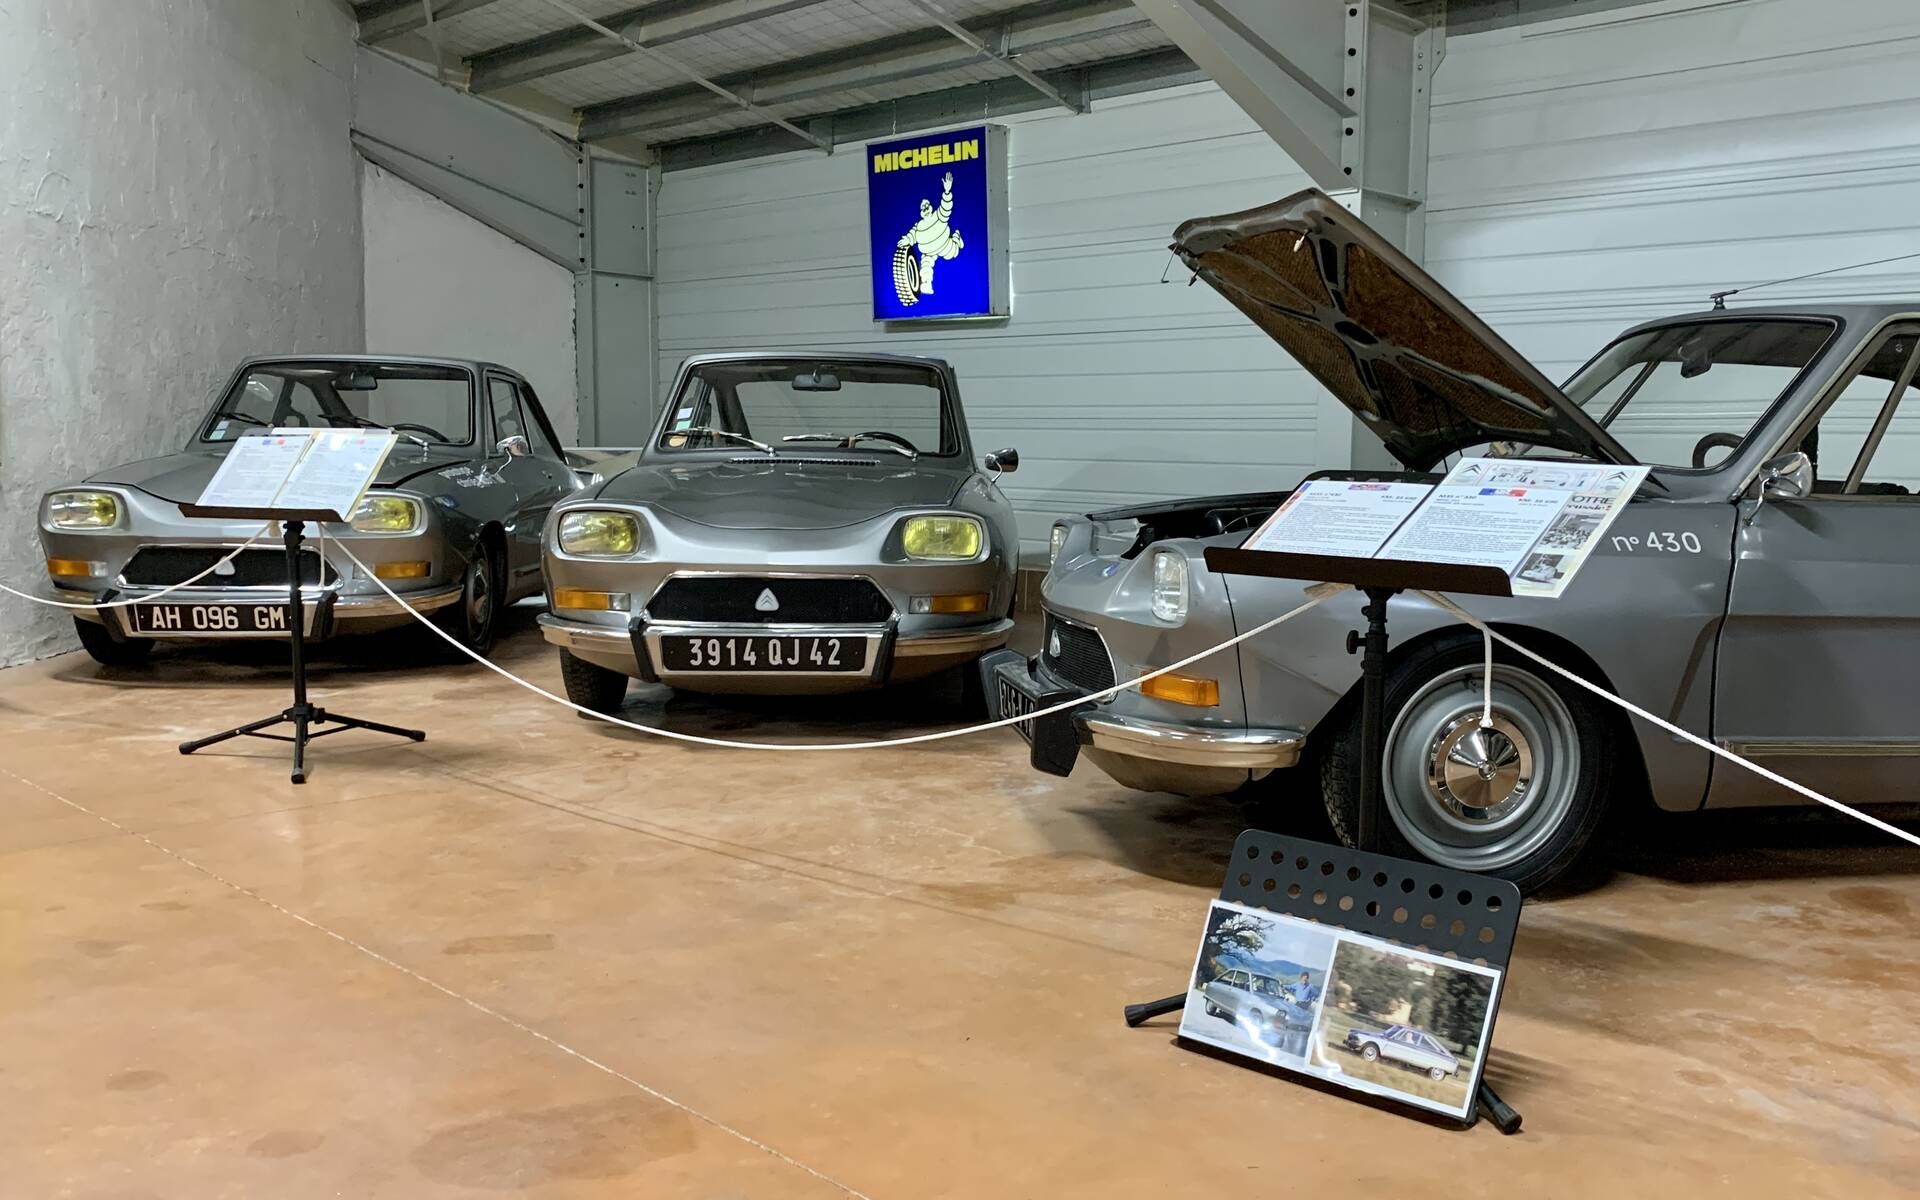 32 - Photos: plus de 100 Citroën d'exception réunies dans un musée en France 543094-photos-plus-de-100-citroen-d-exception-reunies-dans-un-musee-en-france